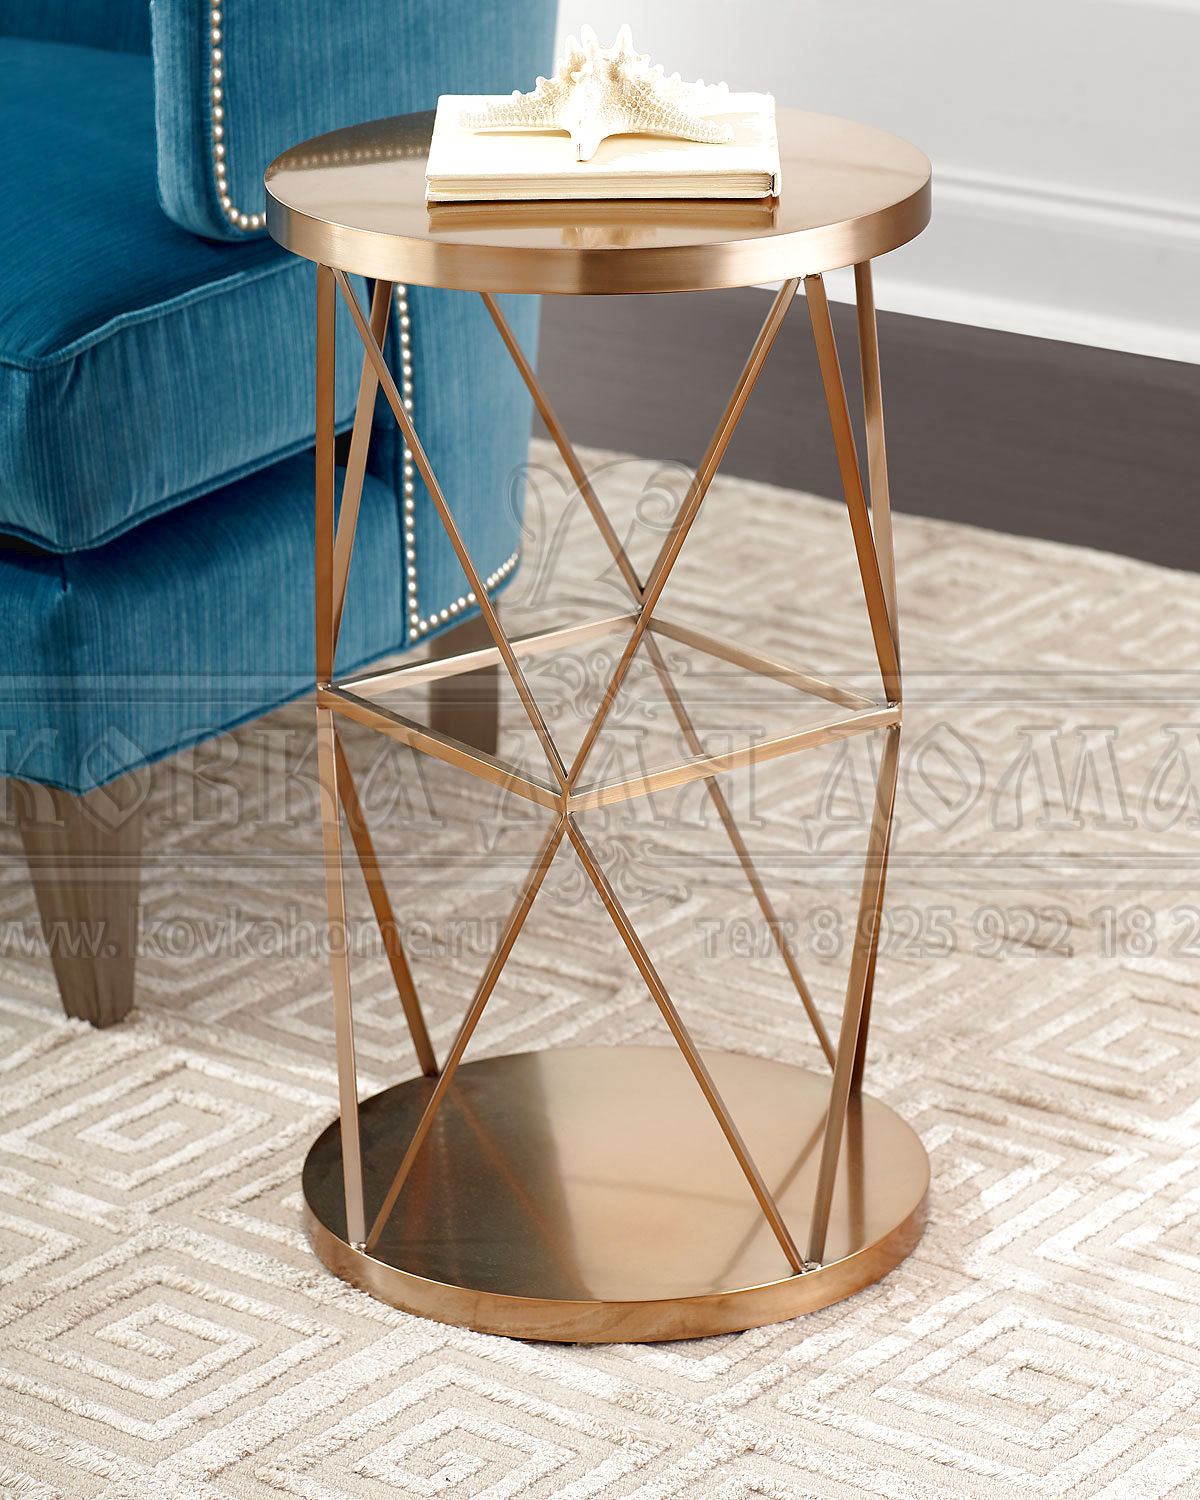 Стол круглой формы с оригинальным подиумом и столешницей из металла. Размер на фото 700(H)х400(D)мм